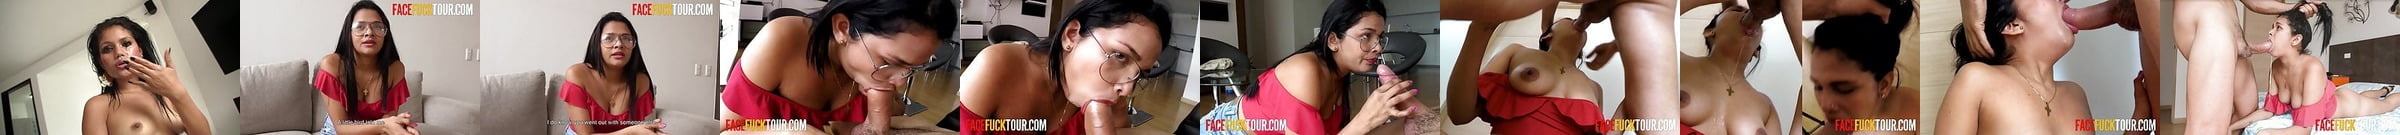 Face Fuck Tour Porn Videos Xhamster